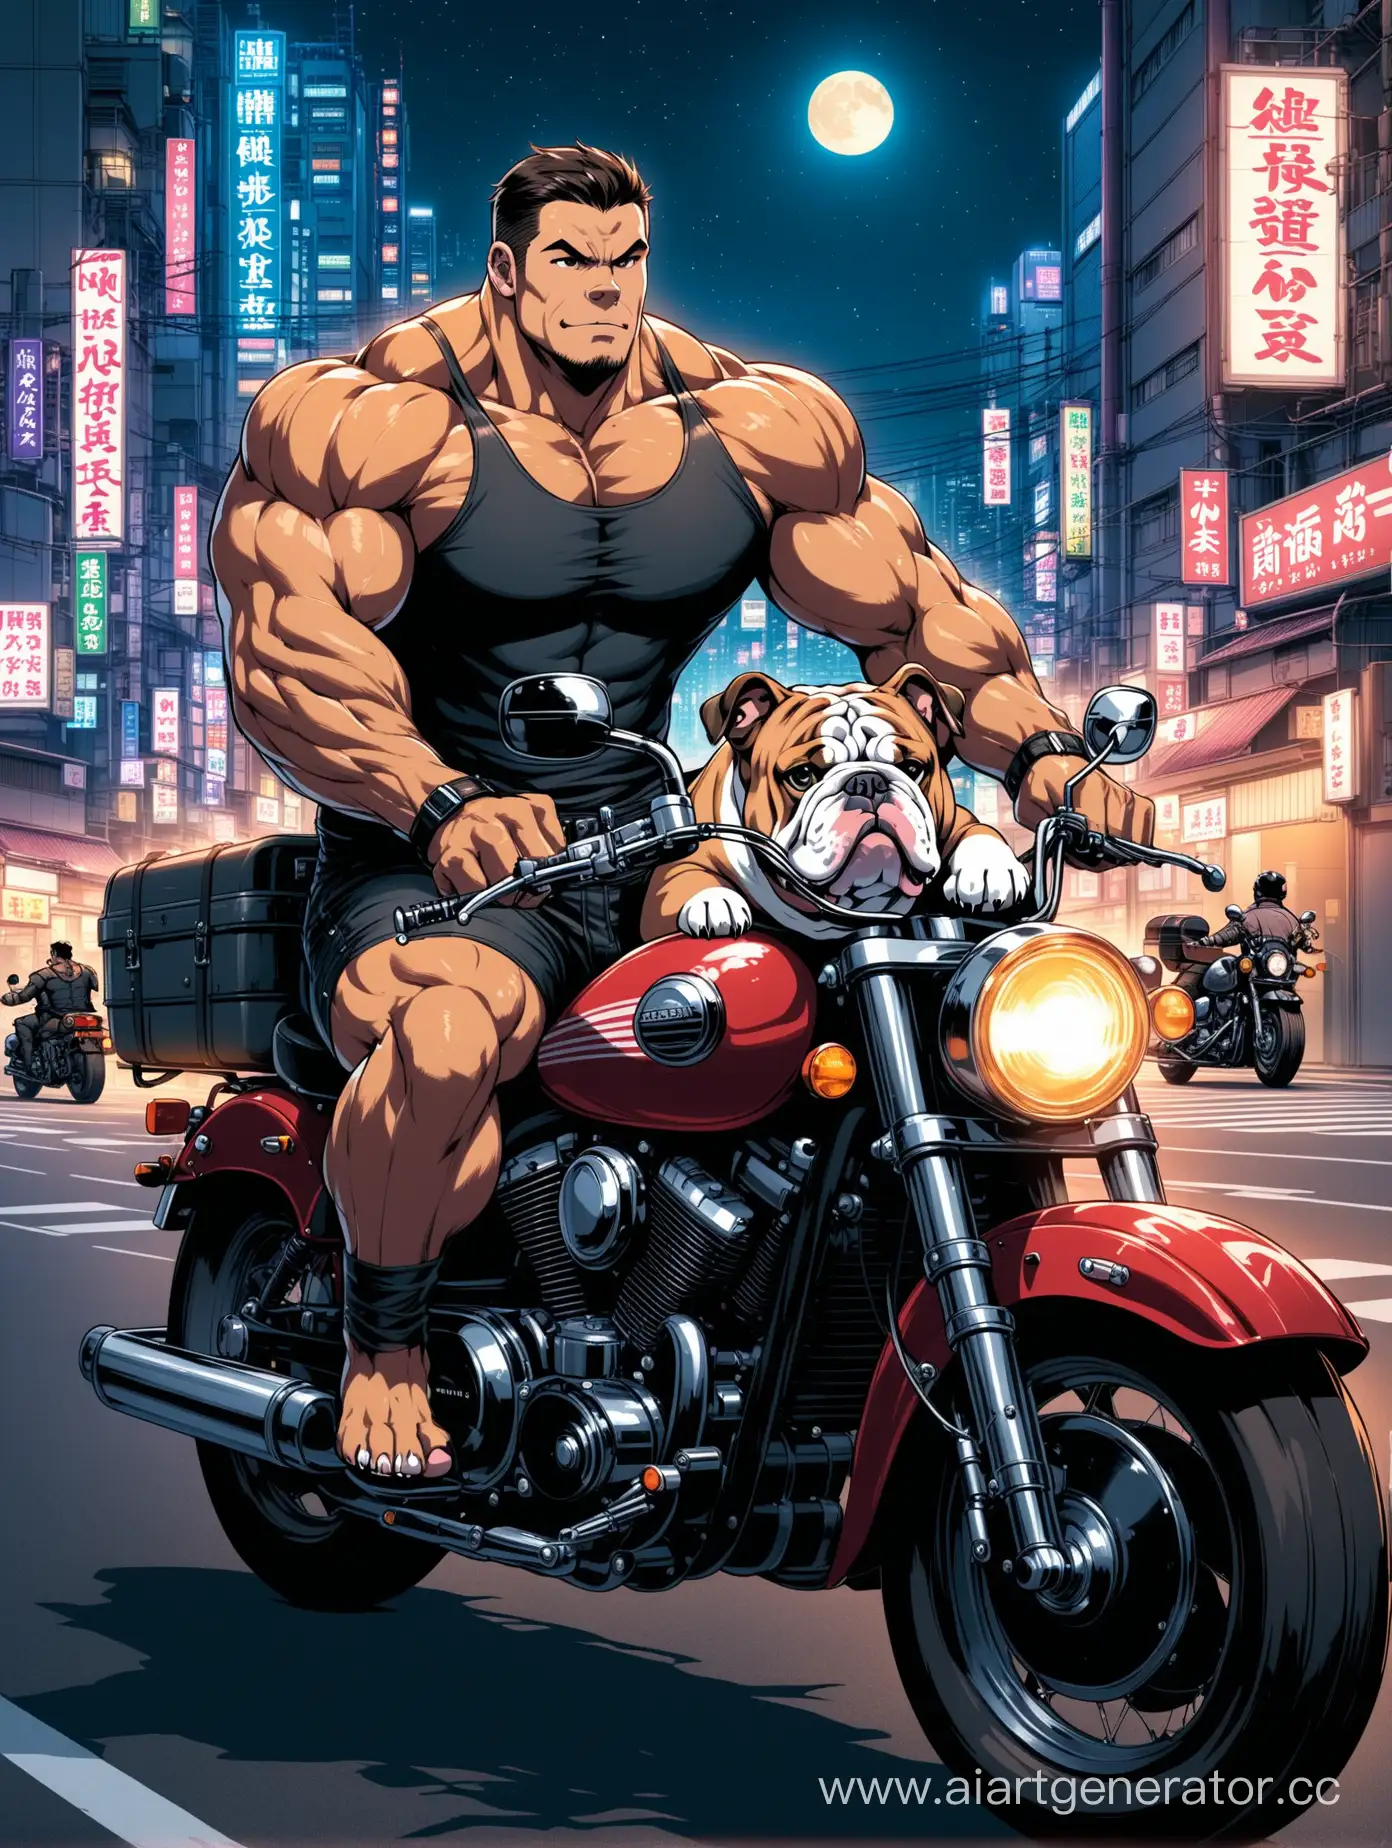  мужчина накаченный на мотоцикле с бульдогом на прицепе едет по ночному городу токио